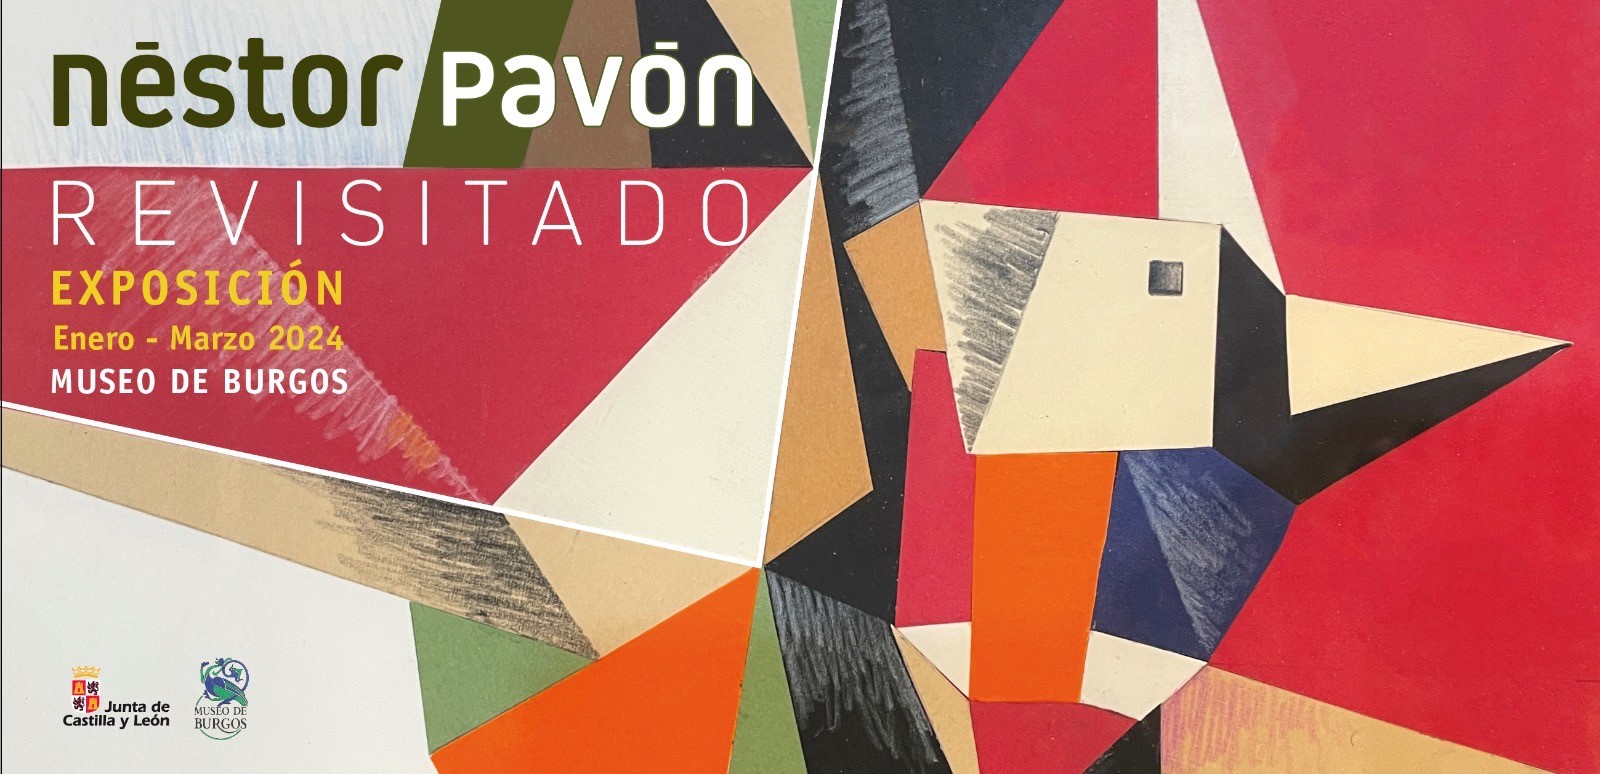 Exposición Nestor Pavón